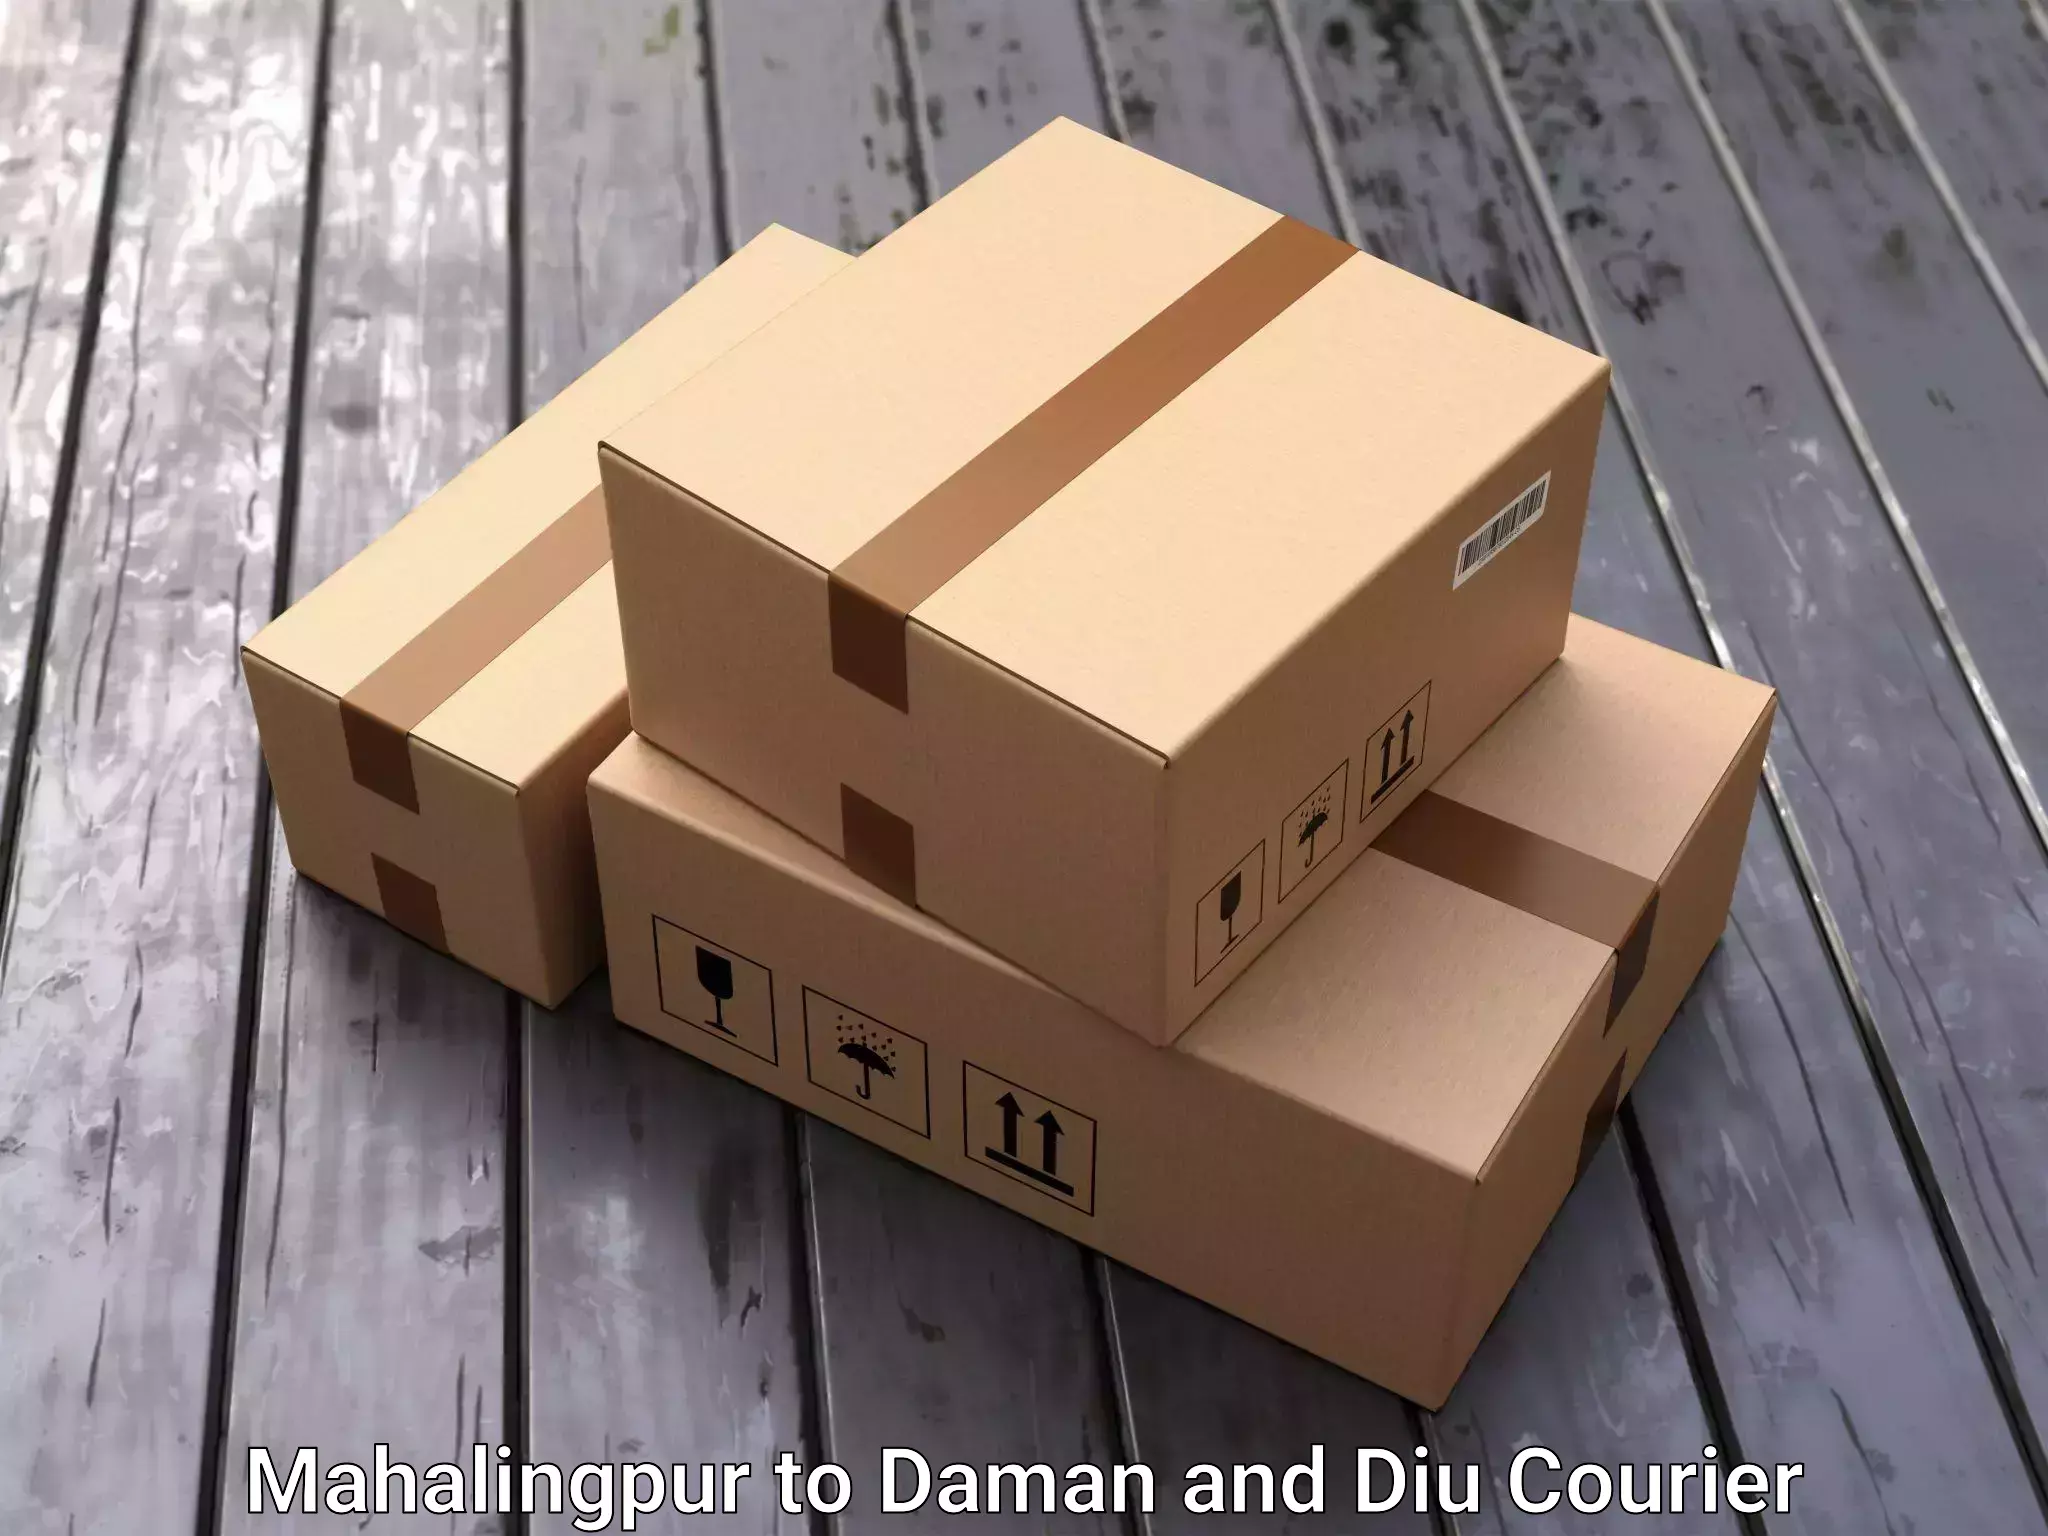 Furniture moving experts Mahalingpur to Daman and Diu